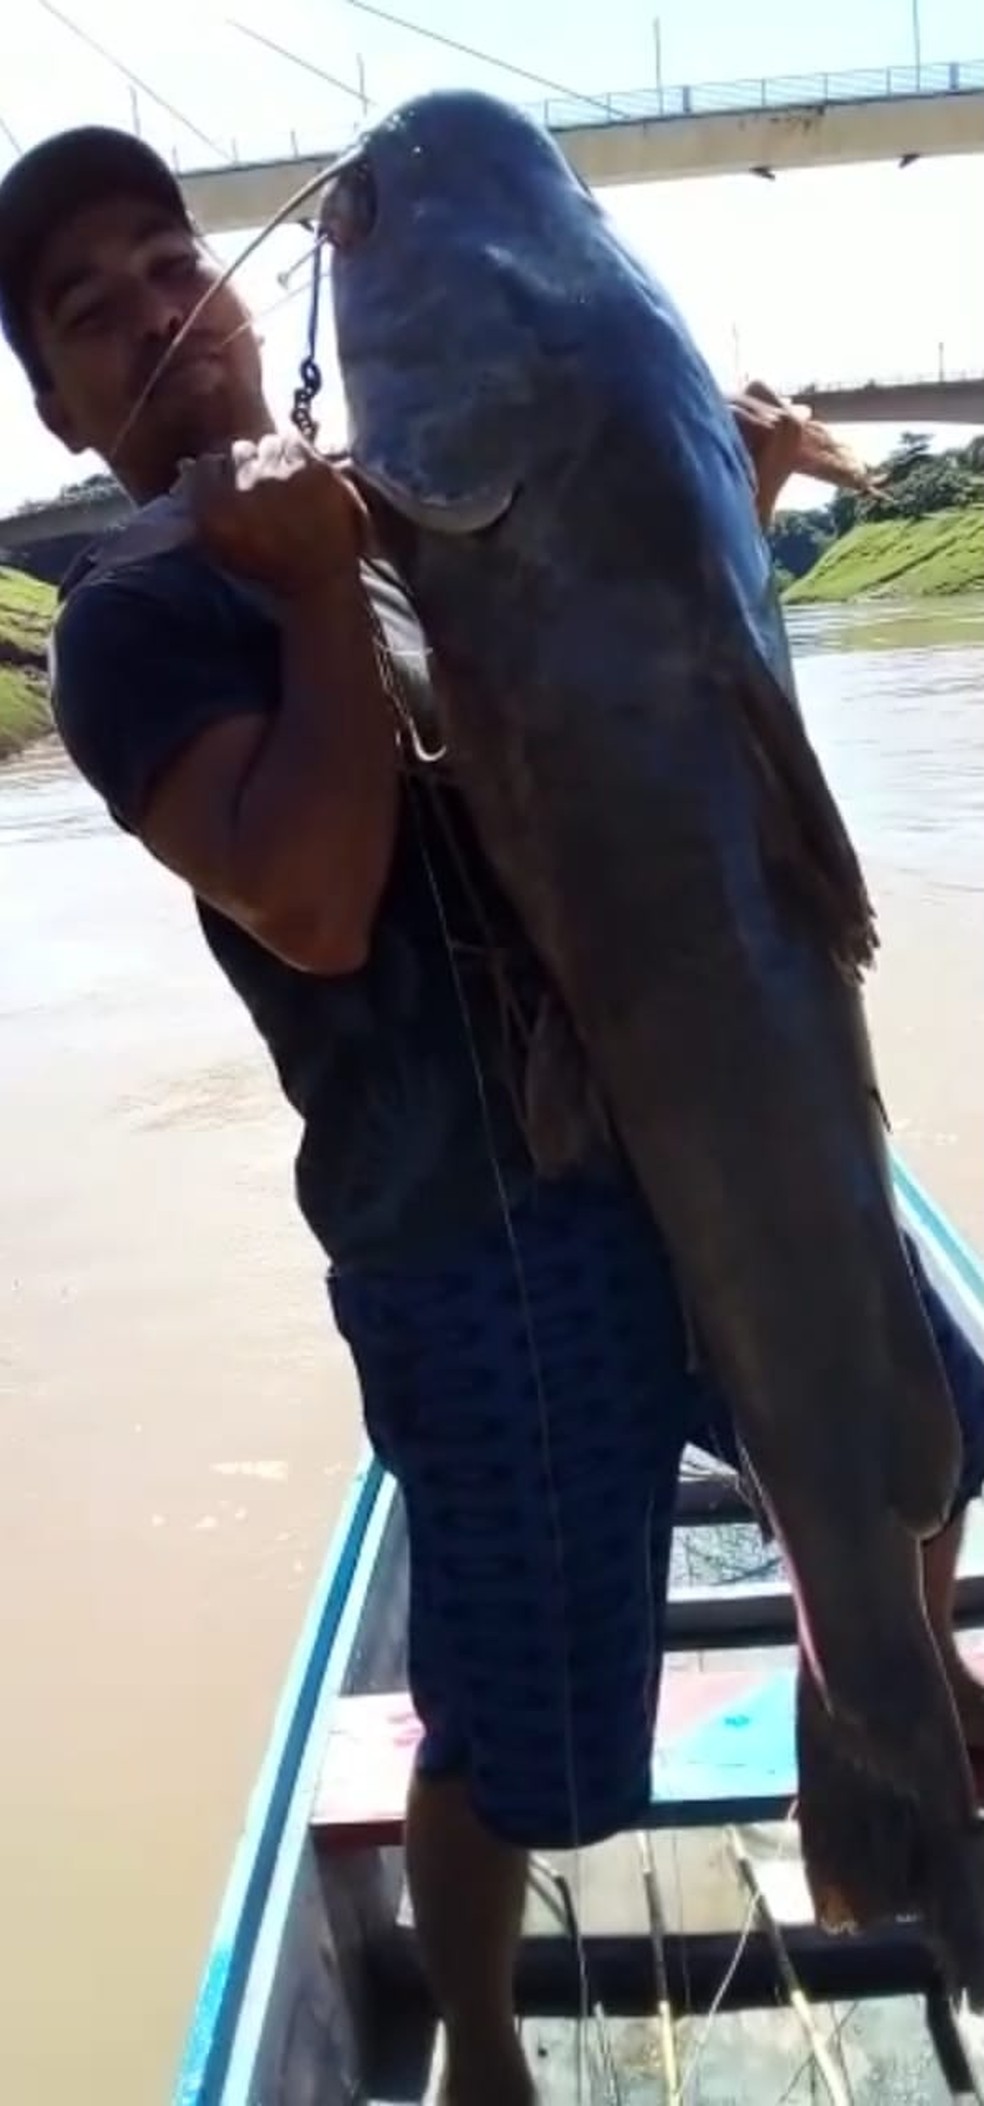 Mailton Moura pescou jaú de quase 50 quilos no Rio Acre, em Rio Branco — Foto: Reprodução